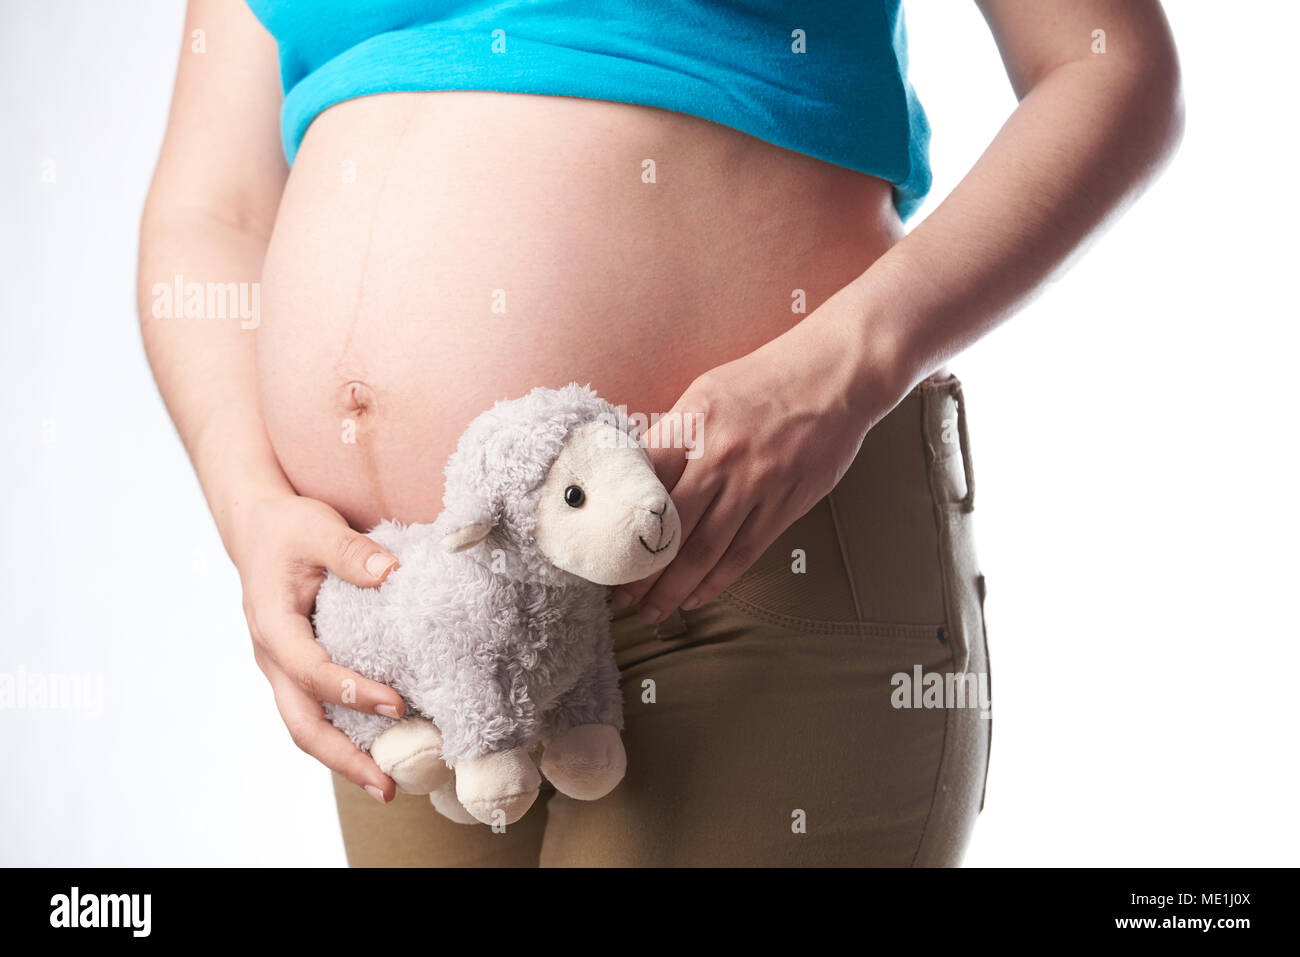 Pregnat Frau Bauch holding Spielzeug schließen bis auf weißem Hintergrund Stockfoto